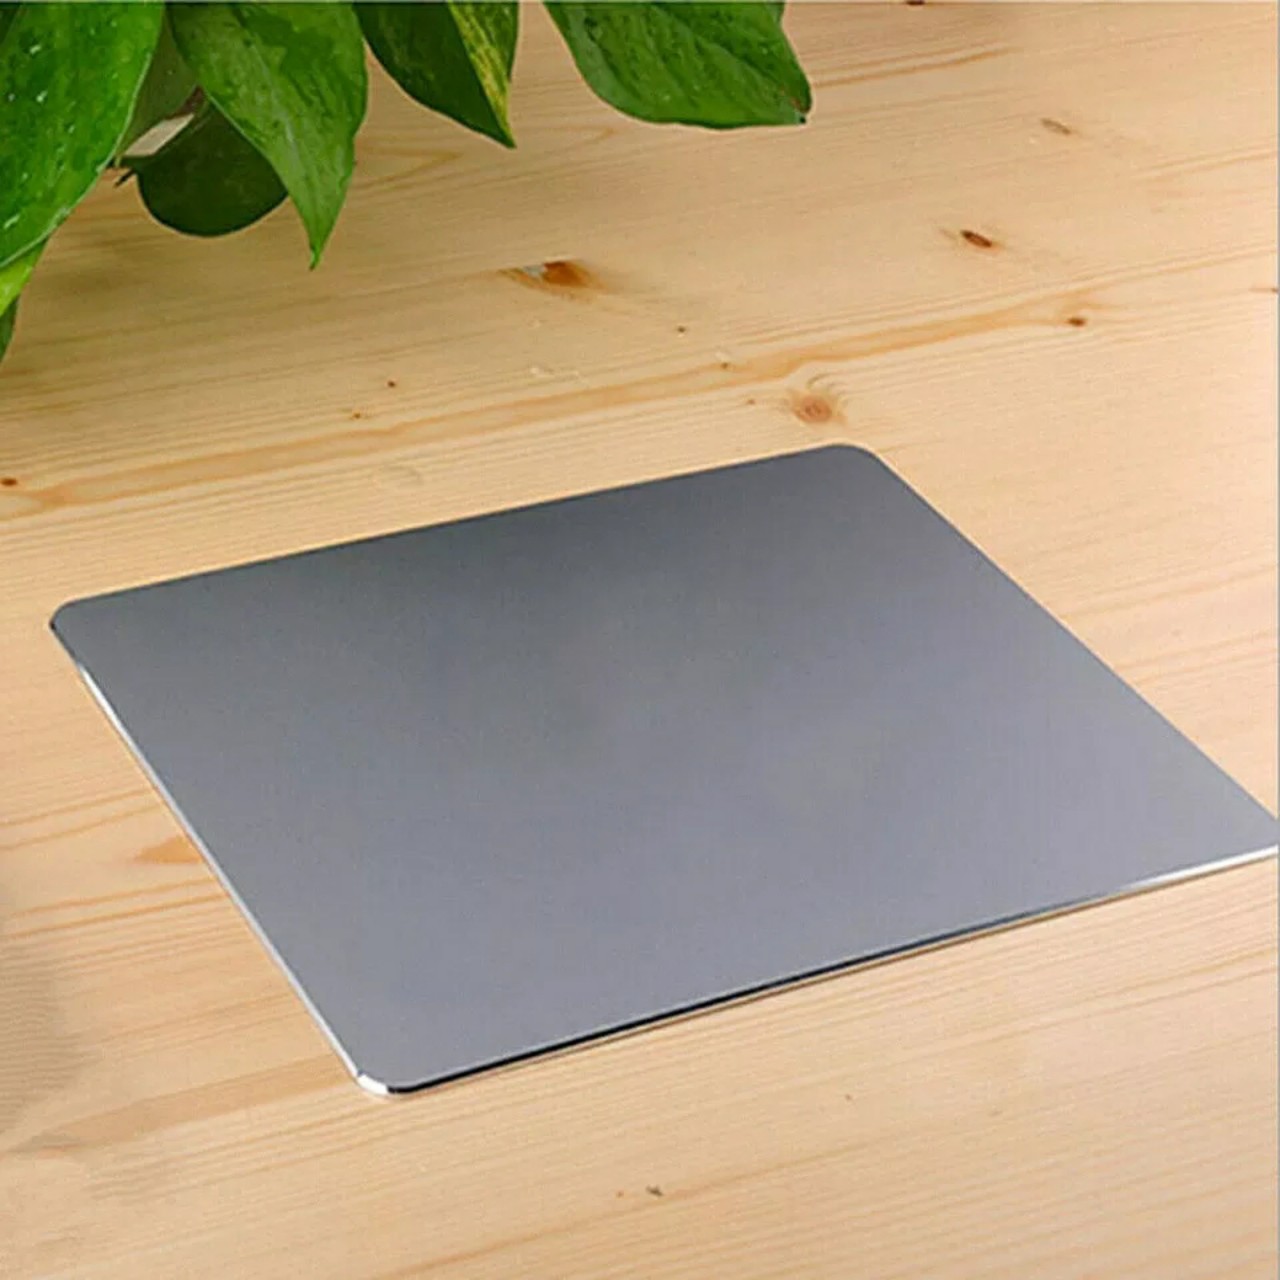 Lót Chuột Hợp Kim Nhôm Nguyên Khối Cao Cấp Mouse Pad Aluminium Phụ Kiện Bàn Làm Việc Sang Trọng